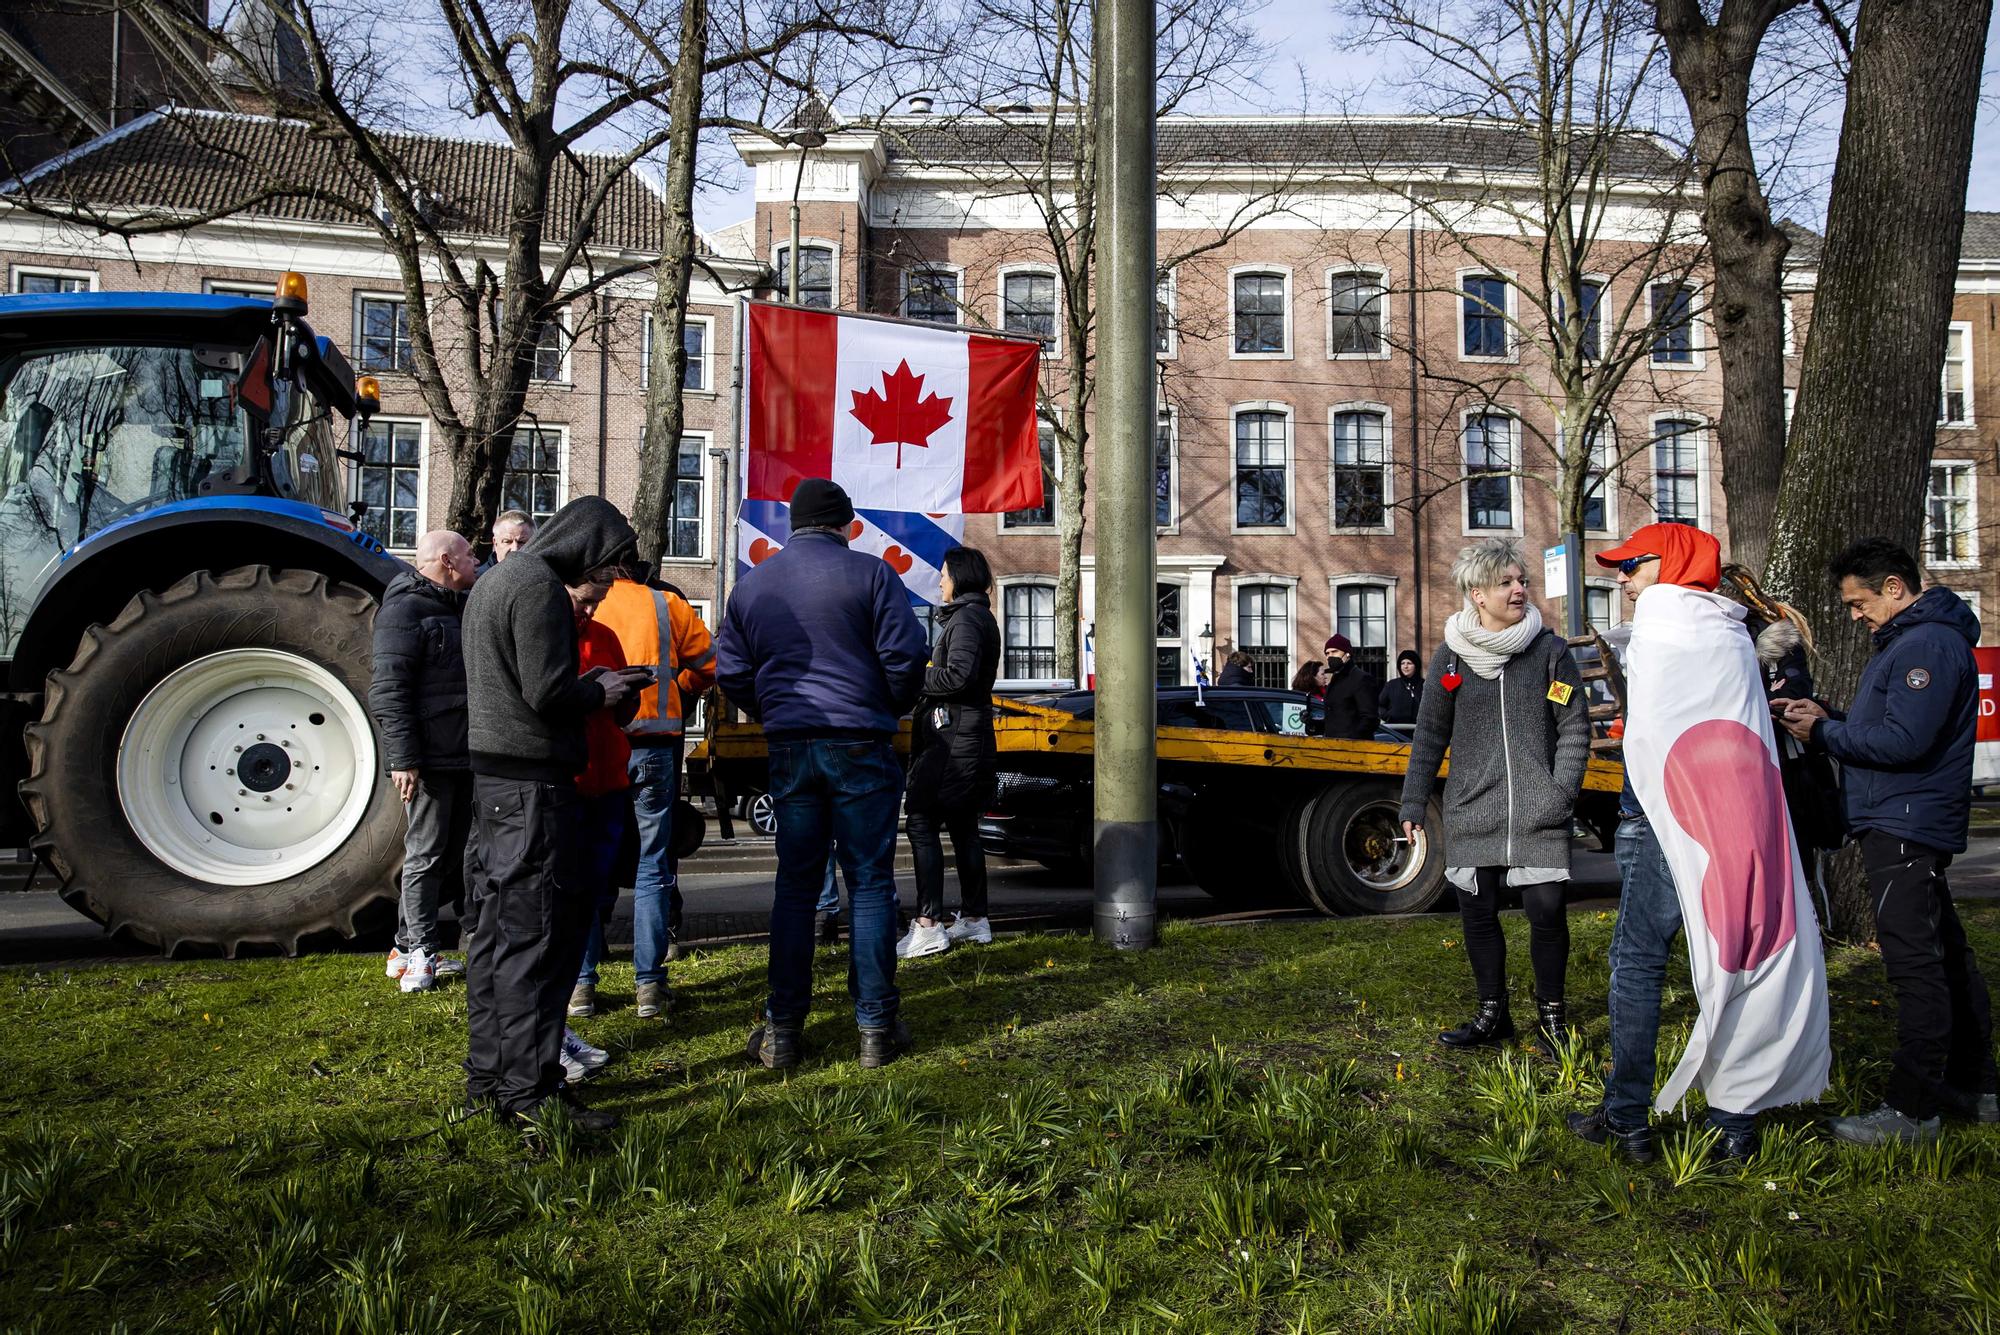 Los camioneros y otros manifestantes se reúnen en el Hofvijver durante una protesta contra las medidas restrictivas del coronavirus en La Haya, Países Bajos, inspirados en lo que está ocurriendo en Canadá.